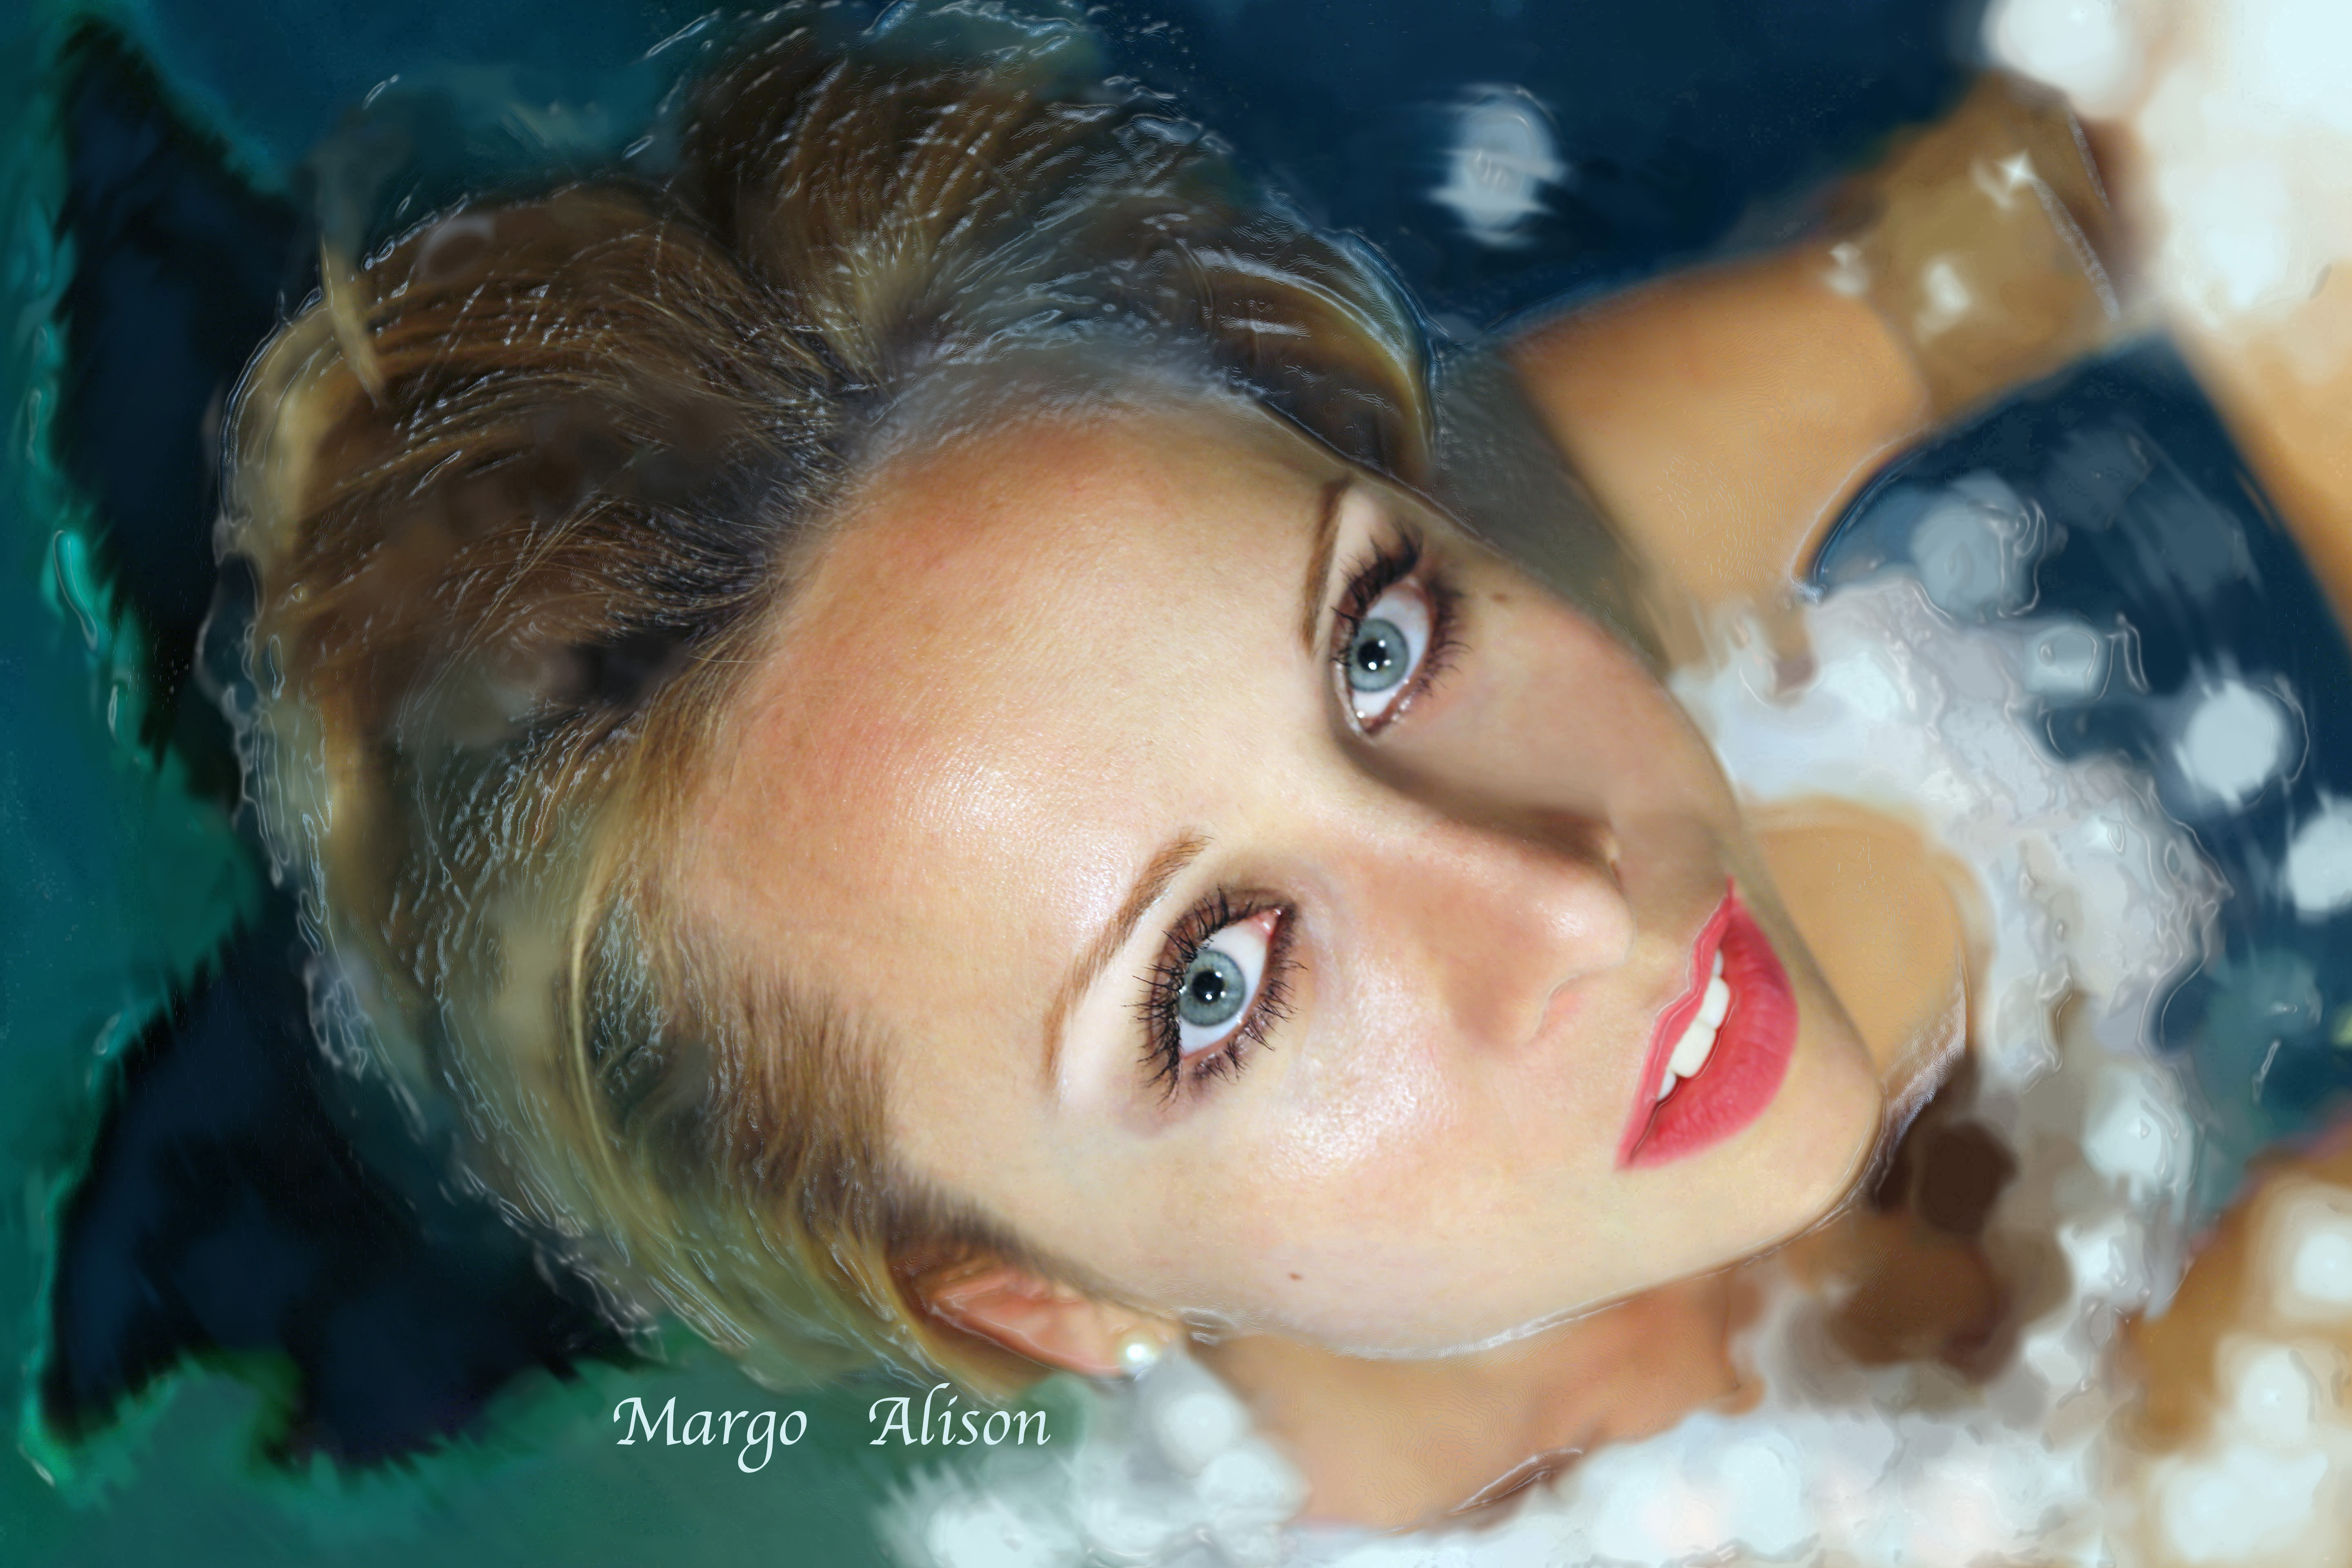 http://www.margoalison.net/#!blond-/c6hg